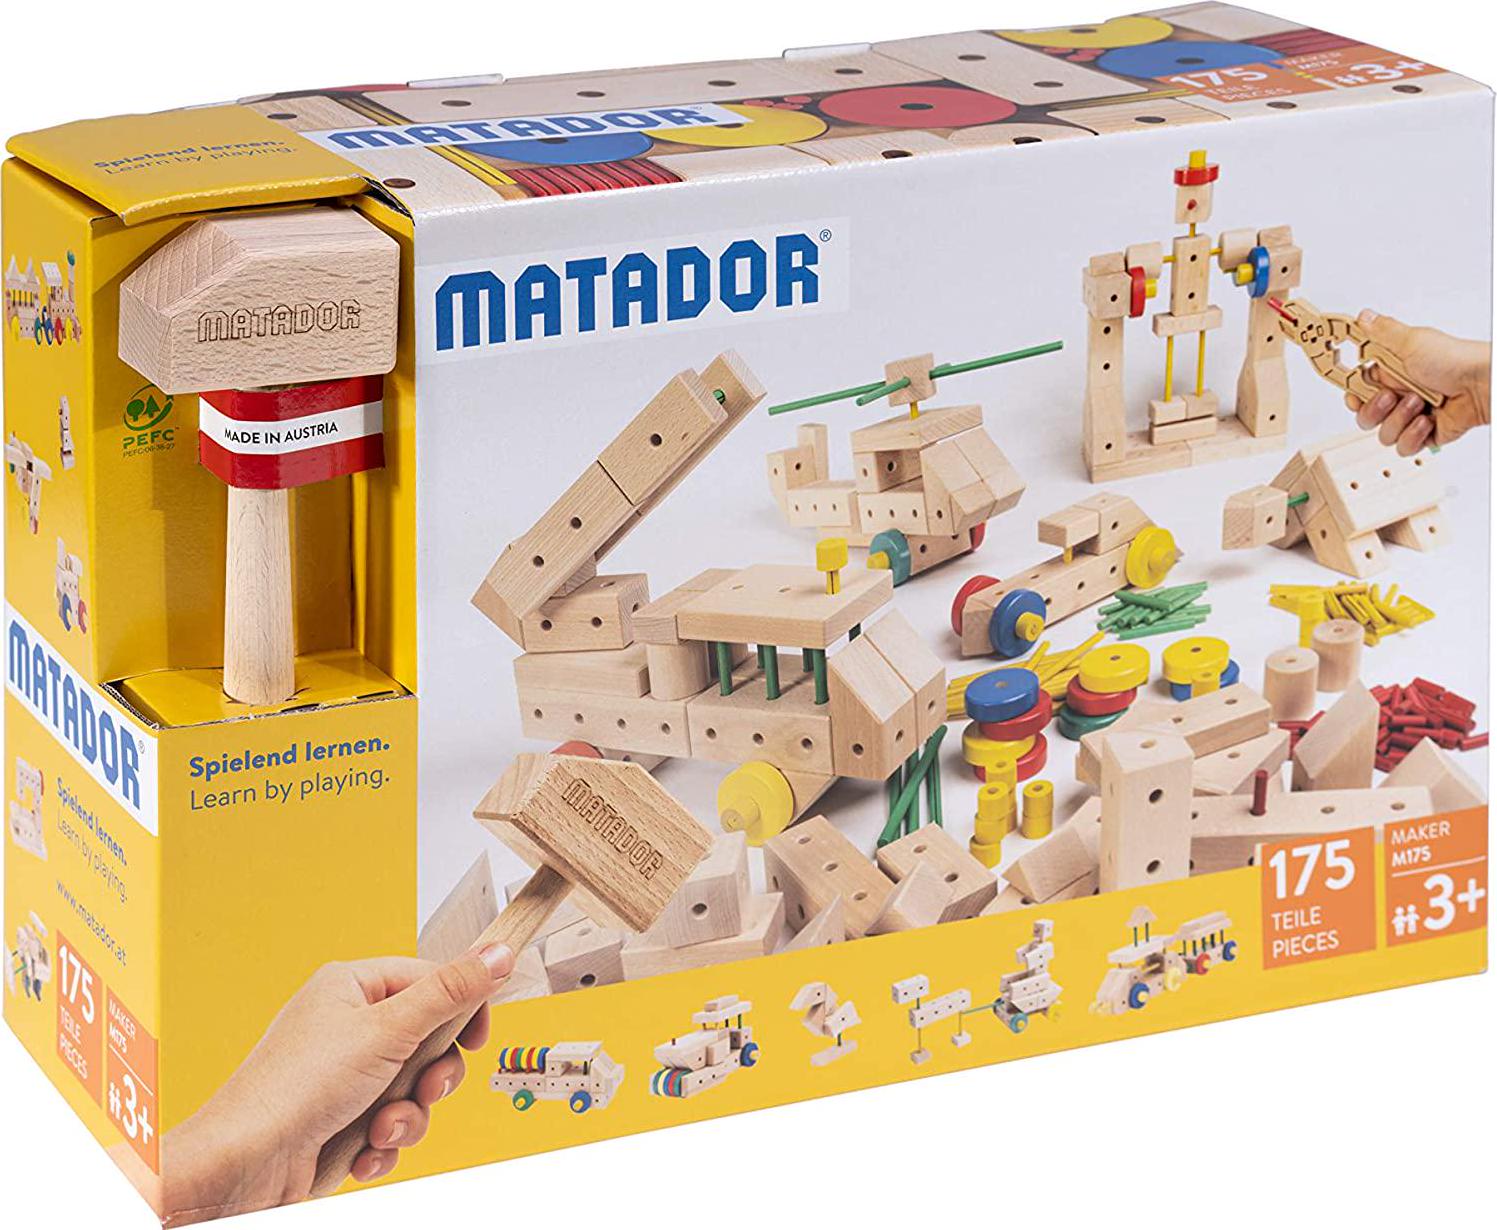 Matador, Matador Maker M175 - 175 pcs Wooden Construction Set for 3+ Age (Made in Austria)